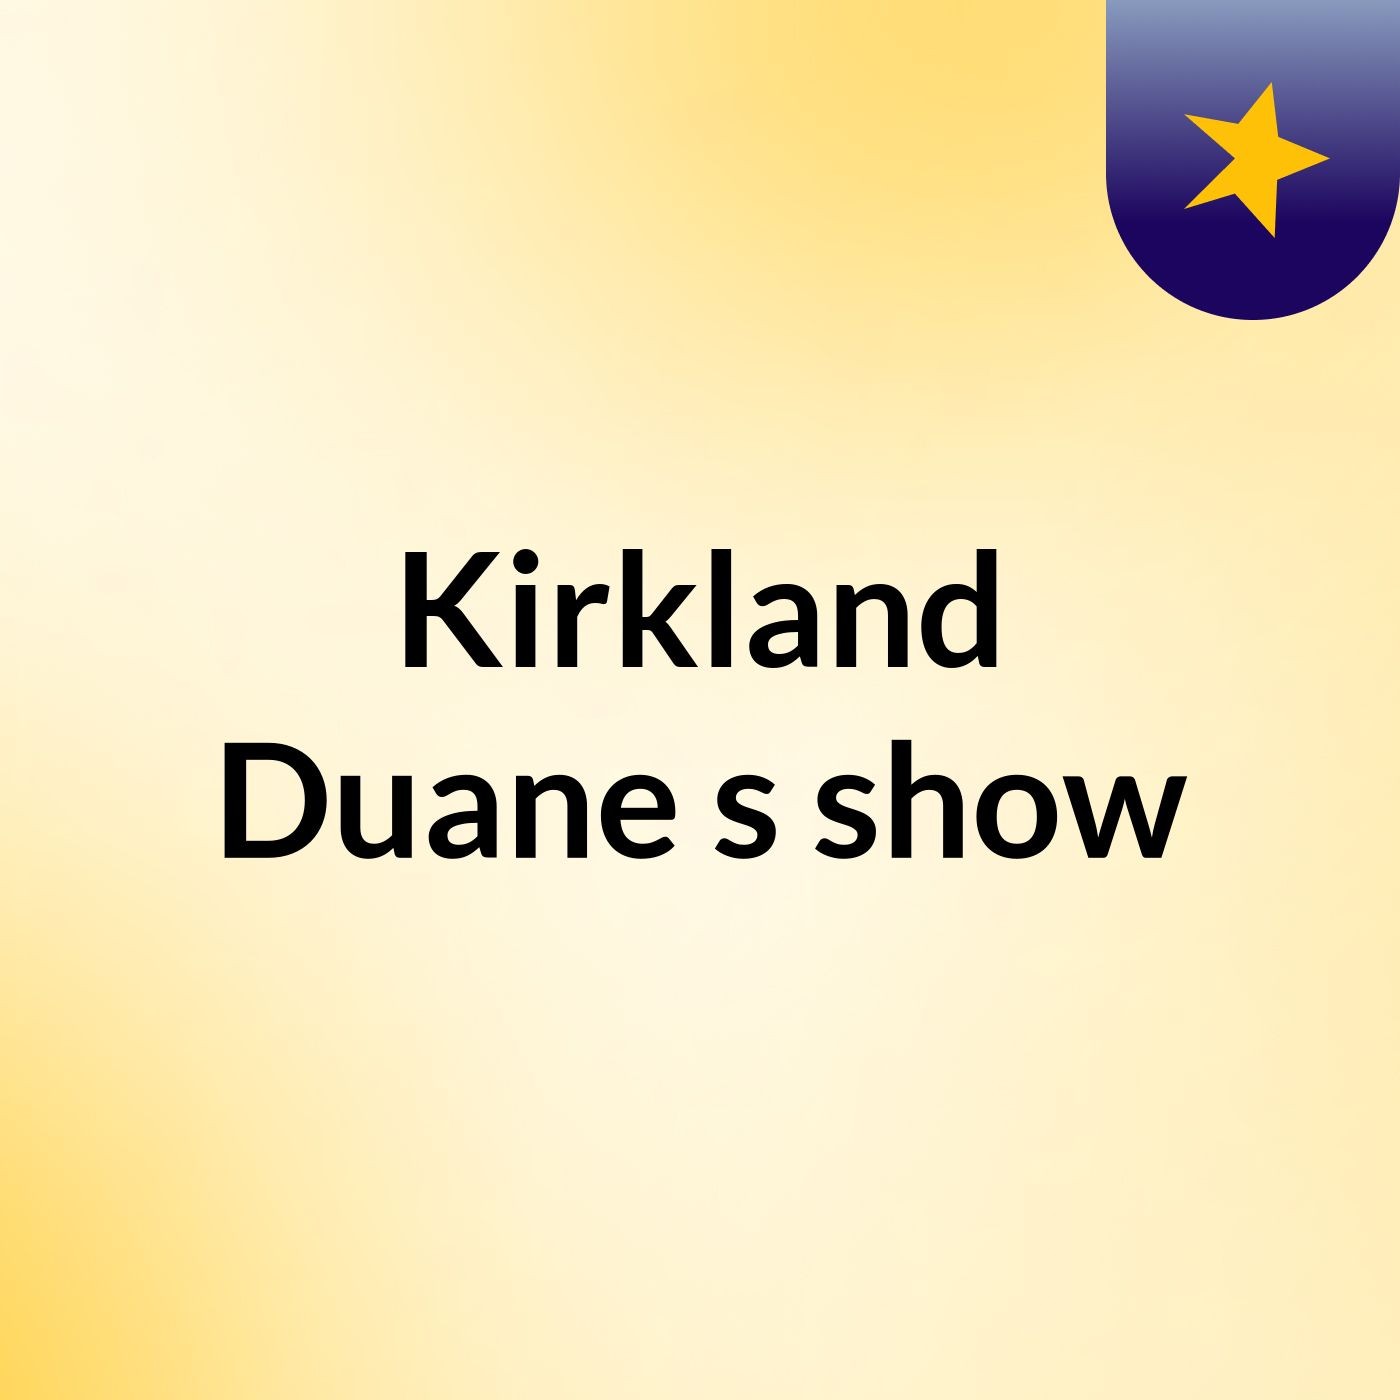 Kirkland Duane's show